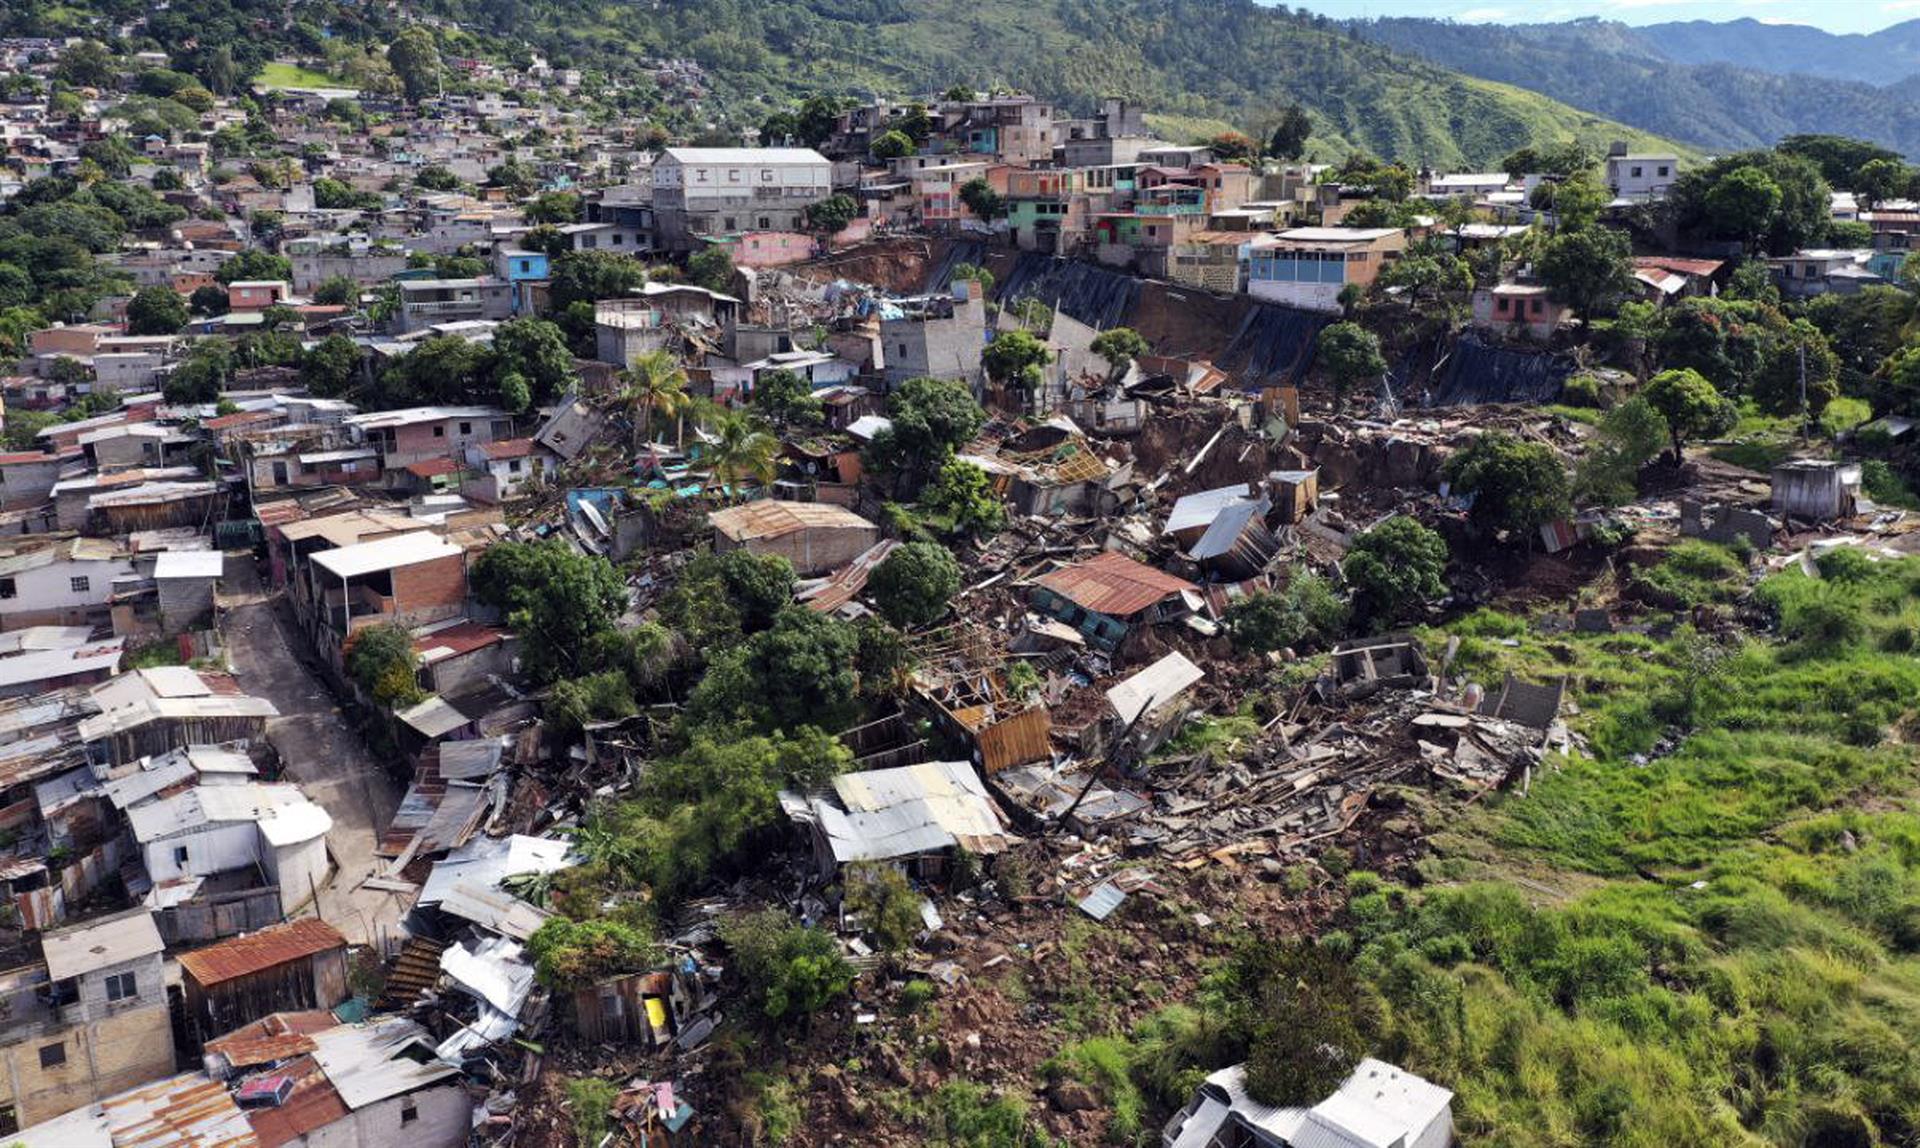 Vista aérea de casas que fueron destruidas por una falla geológica que se activó por las constantes lluvias, en diferentes barrios de la ciudad de Tegucigalpa (Honduras).